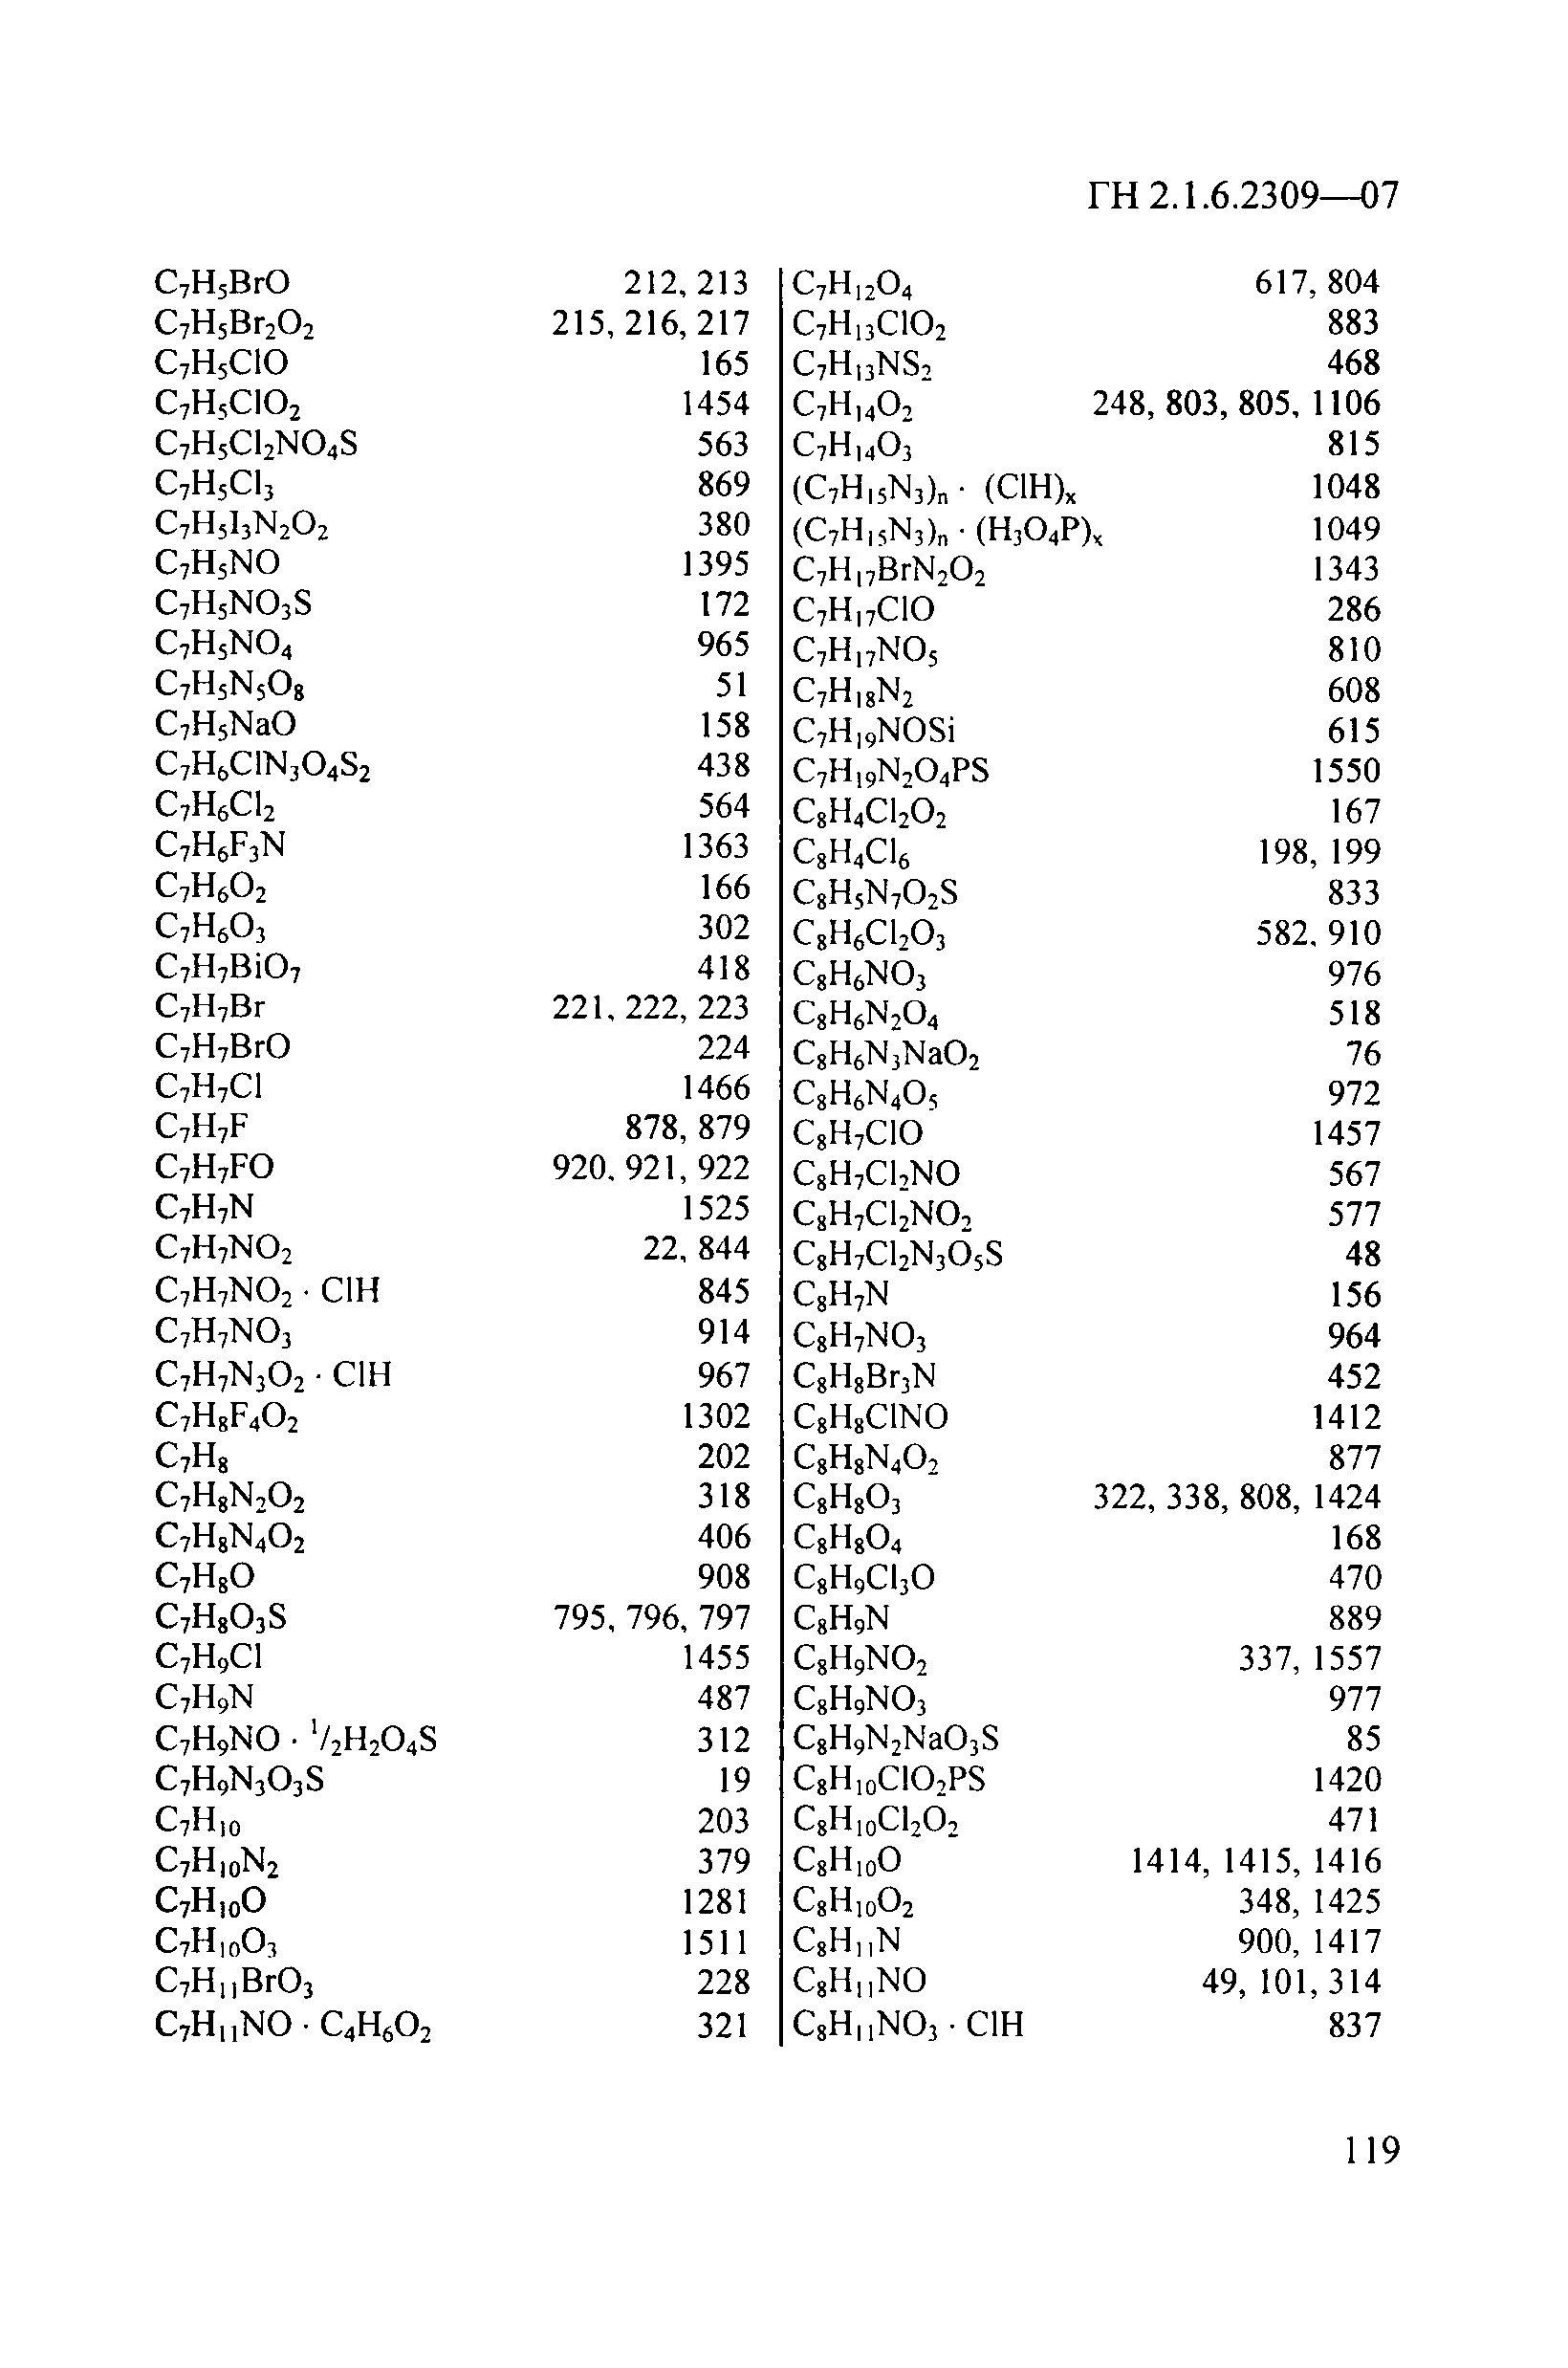 ГН 2.1.6.2309-07